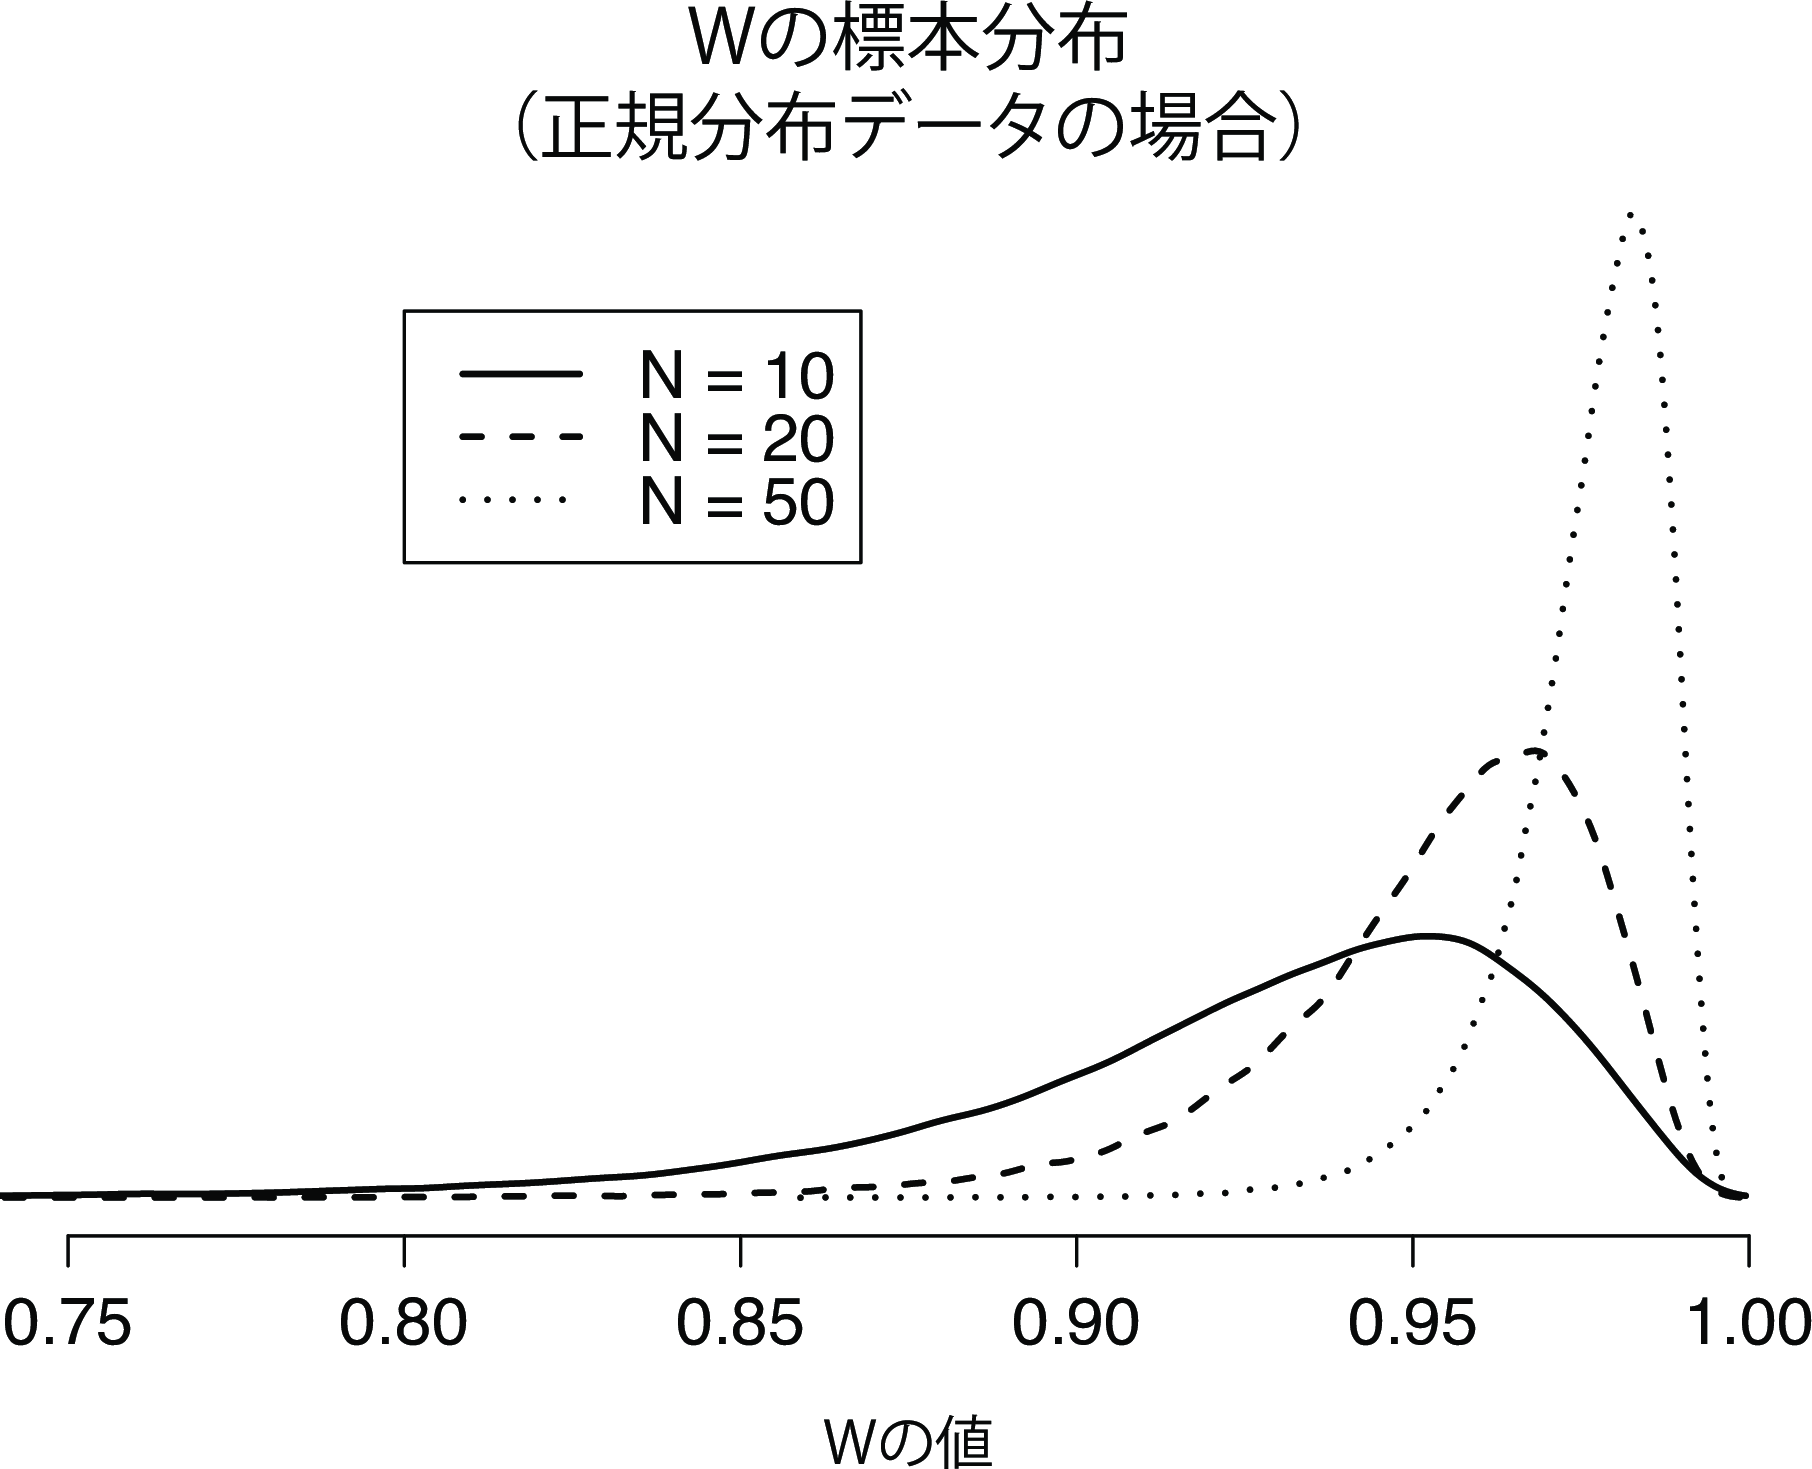 標本サイズが10，20，50のサンプルについて，データが正規分布しているという帰無仮説におけるシャピロ・ウィルク統計量\(W\)の標本分布。\(W\)の小さな値は正規分布からの逸脱を示す